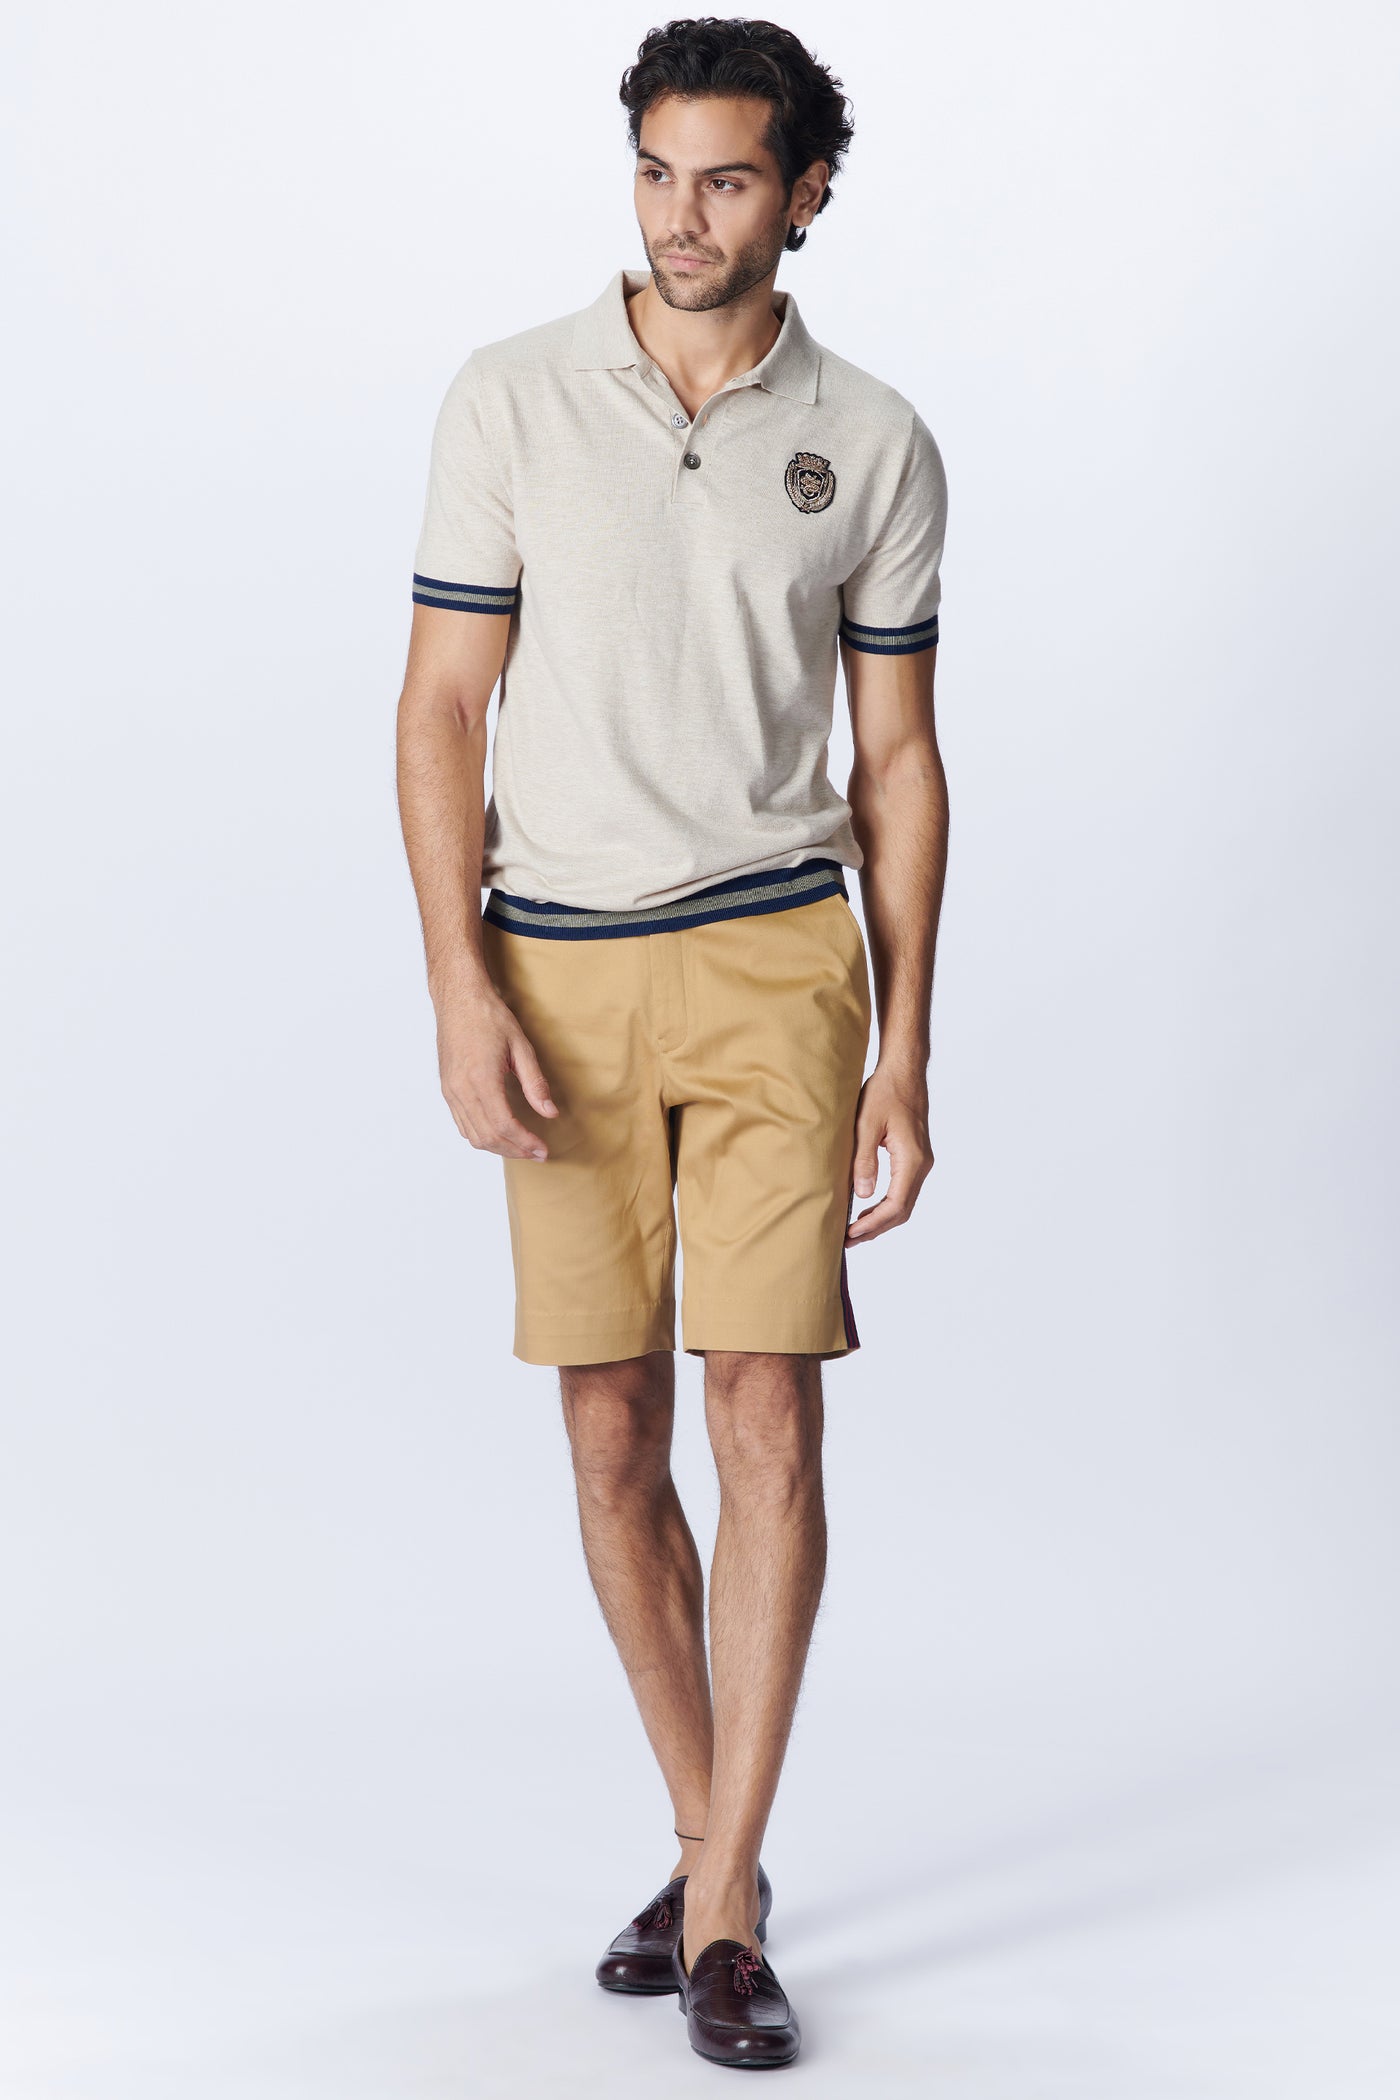 SN By Shantanu Nikhil Menswear SNCC Beige Knit T-Shirt indian designer wear online shopping melange singapore